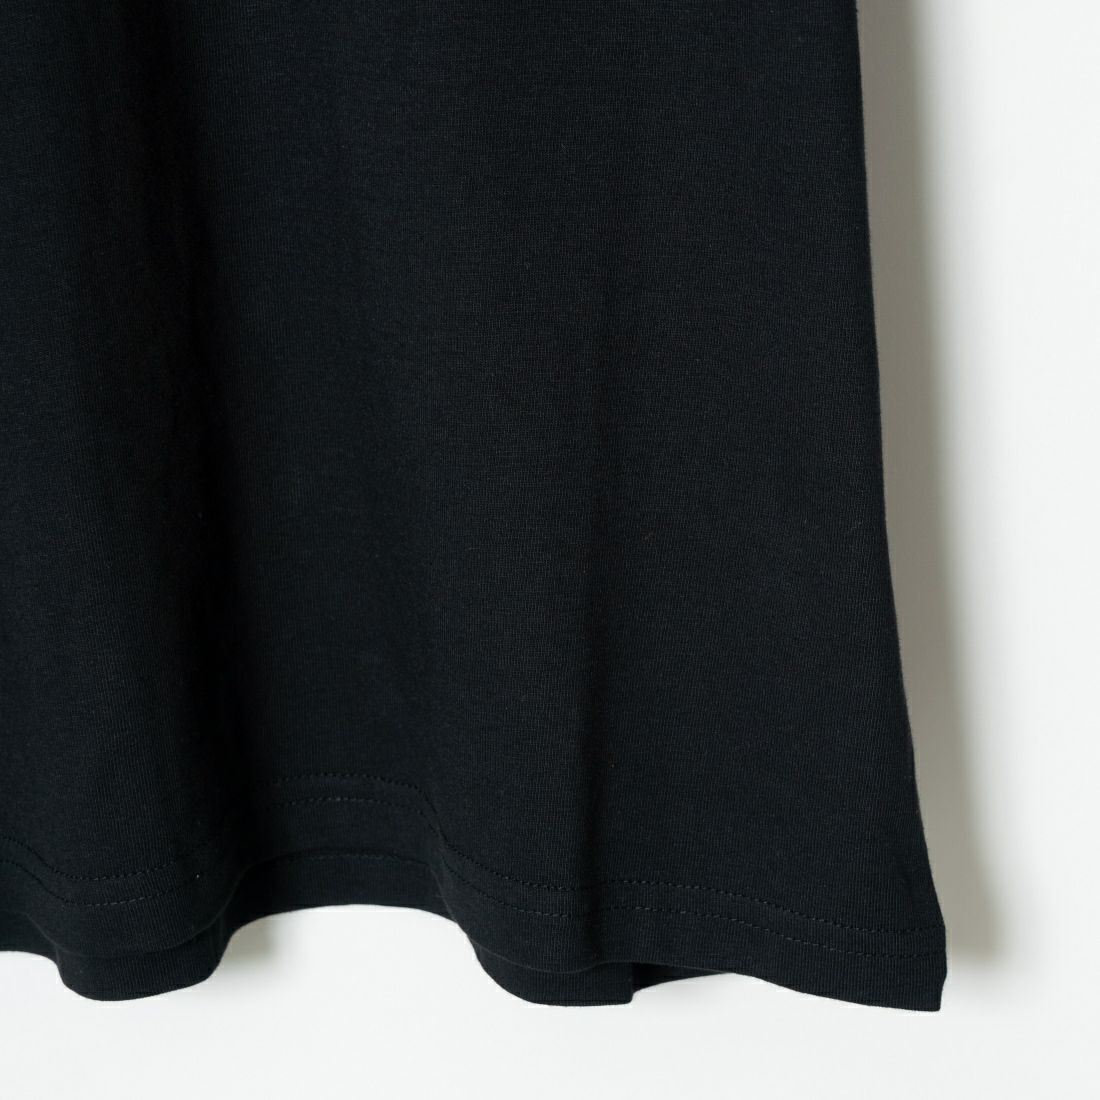 carhartt WIP [カーハートダブリューアイピー] ロングスリーブポケットTシャツ [I030437] BLACK &&モデル身長：173cm 着用サイズ：M&&